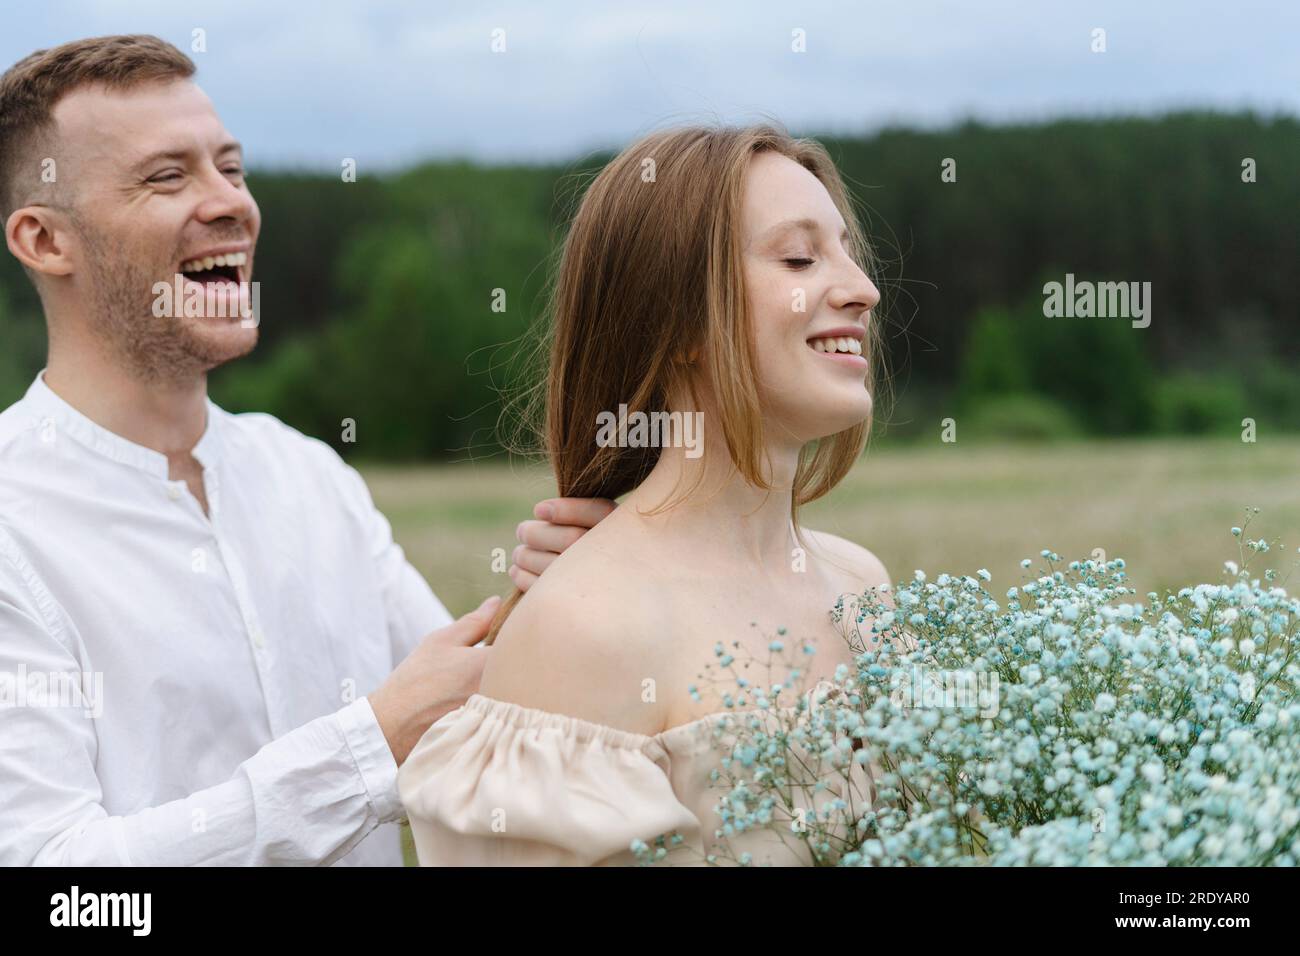 Homme joyeux jouant avec les cheveux de la petite amie sur le terrain Banque D'Images